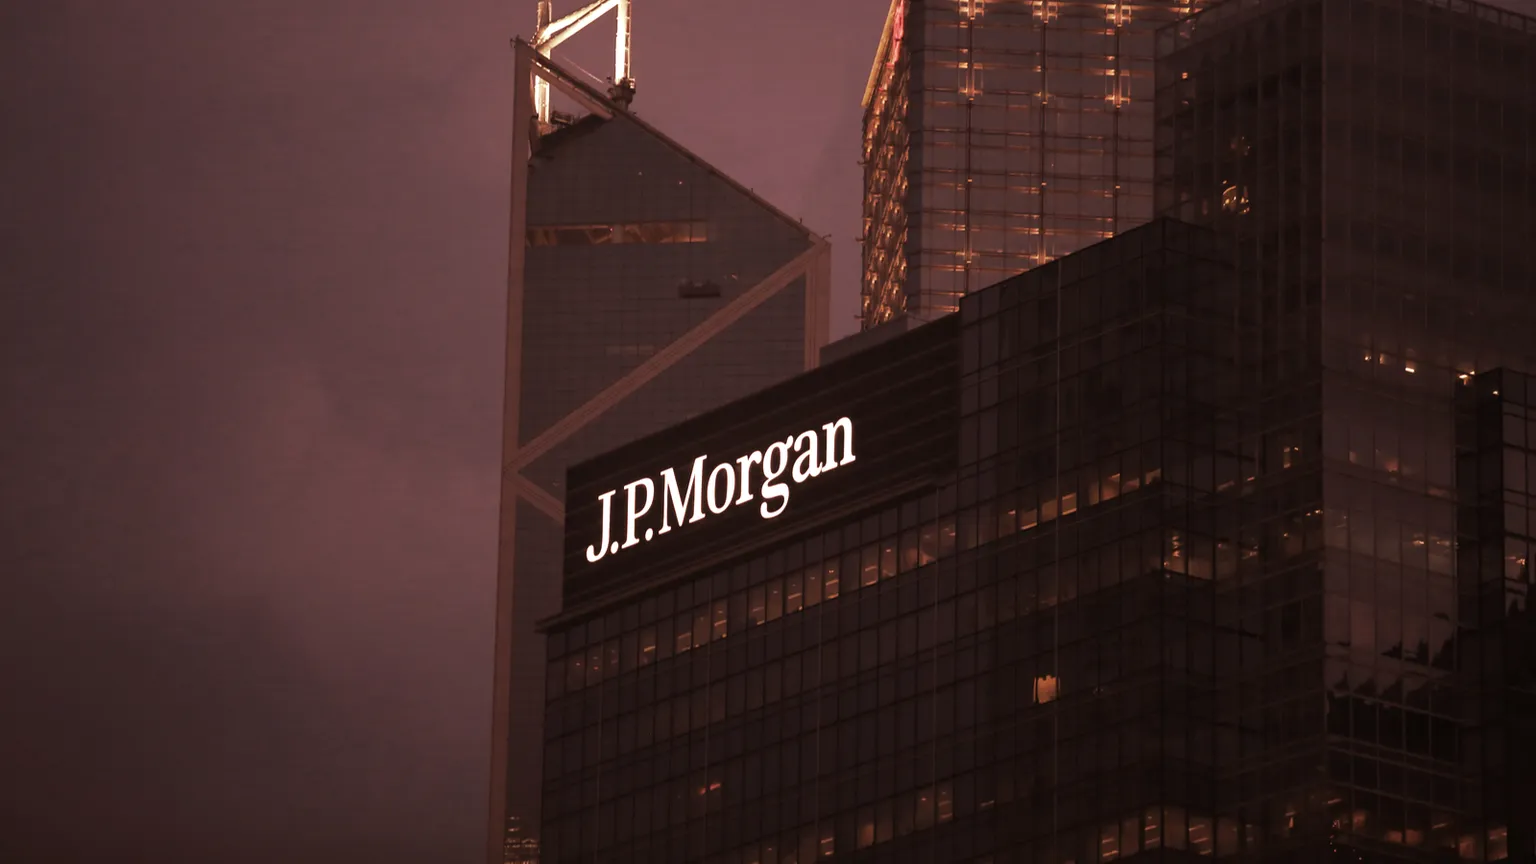 Edificio de JP Morgan en Nueva York. Imagen: Shutterstock